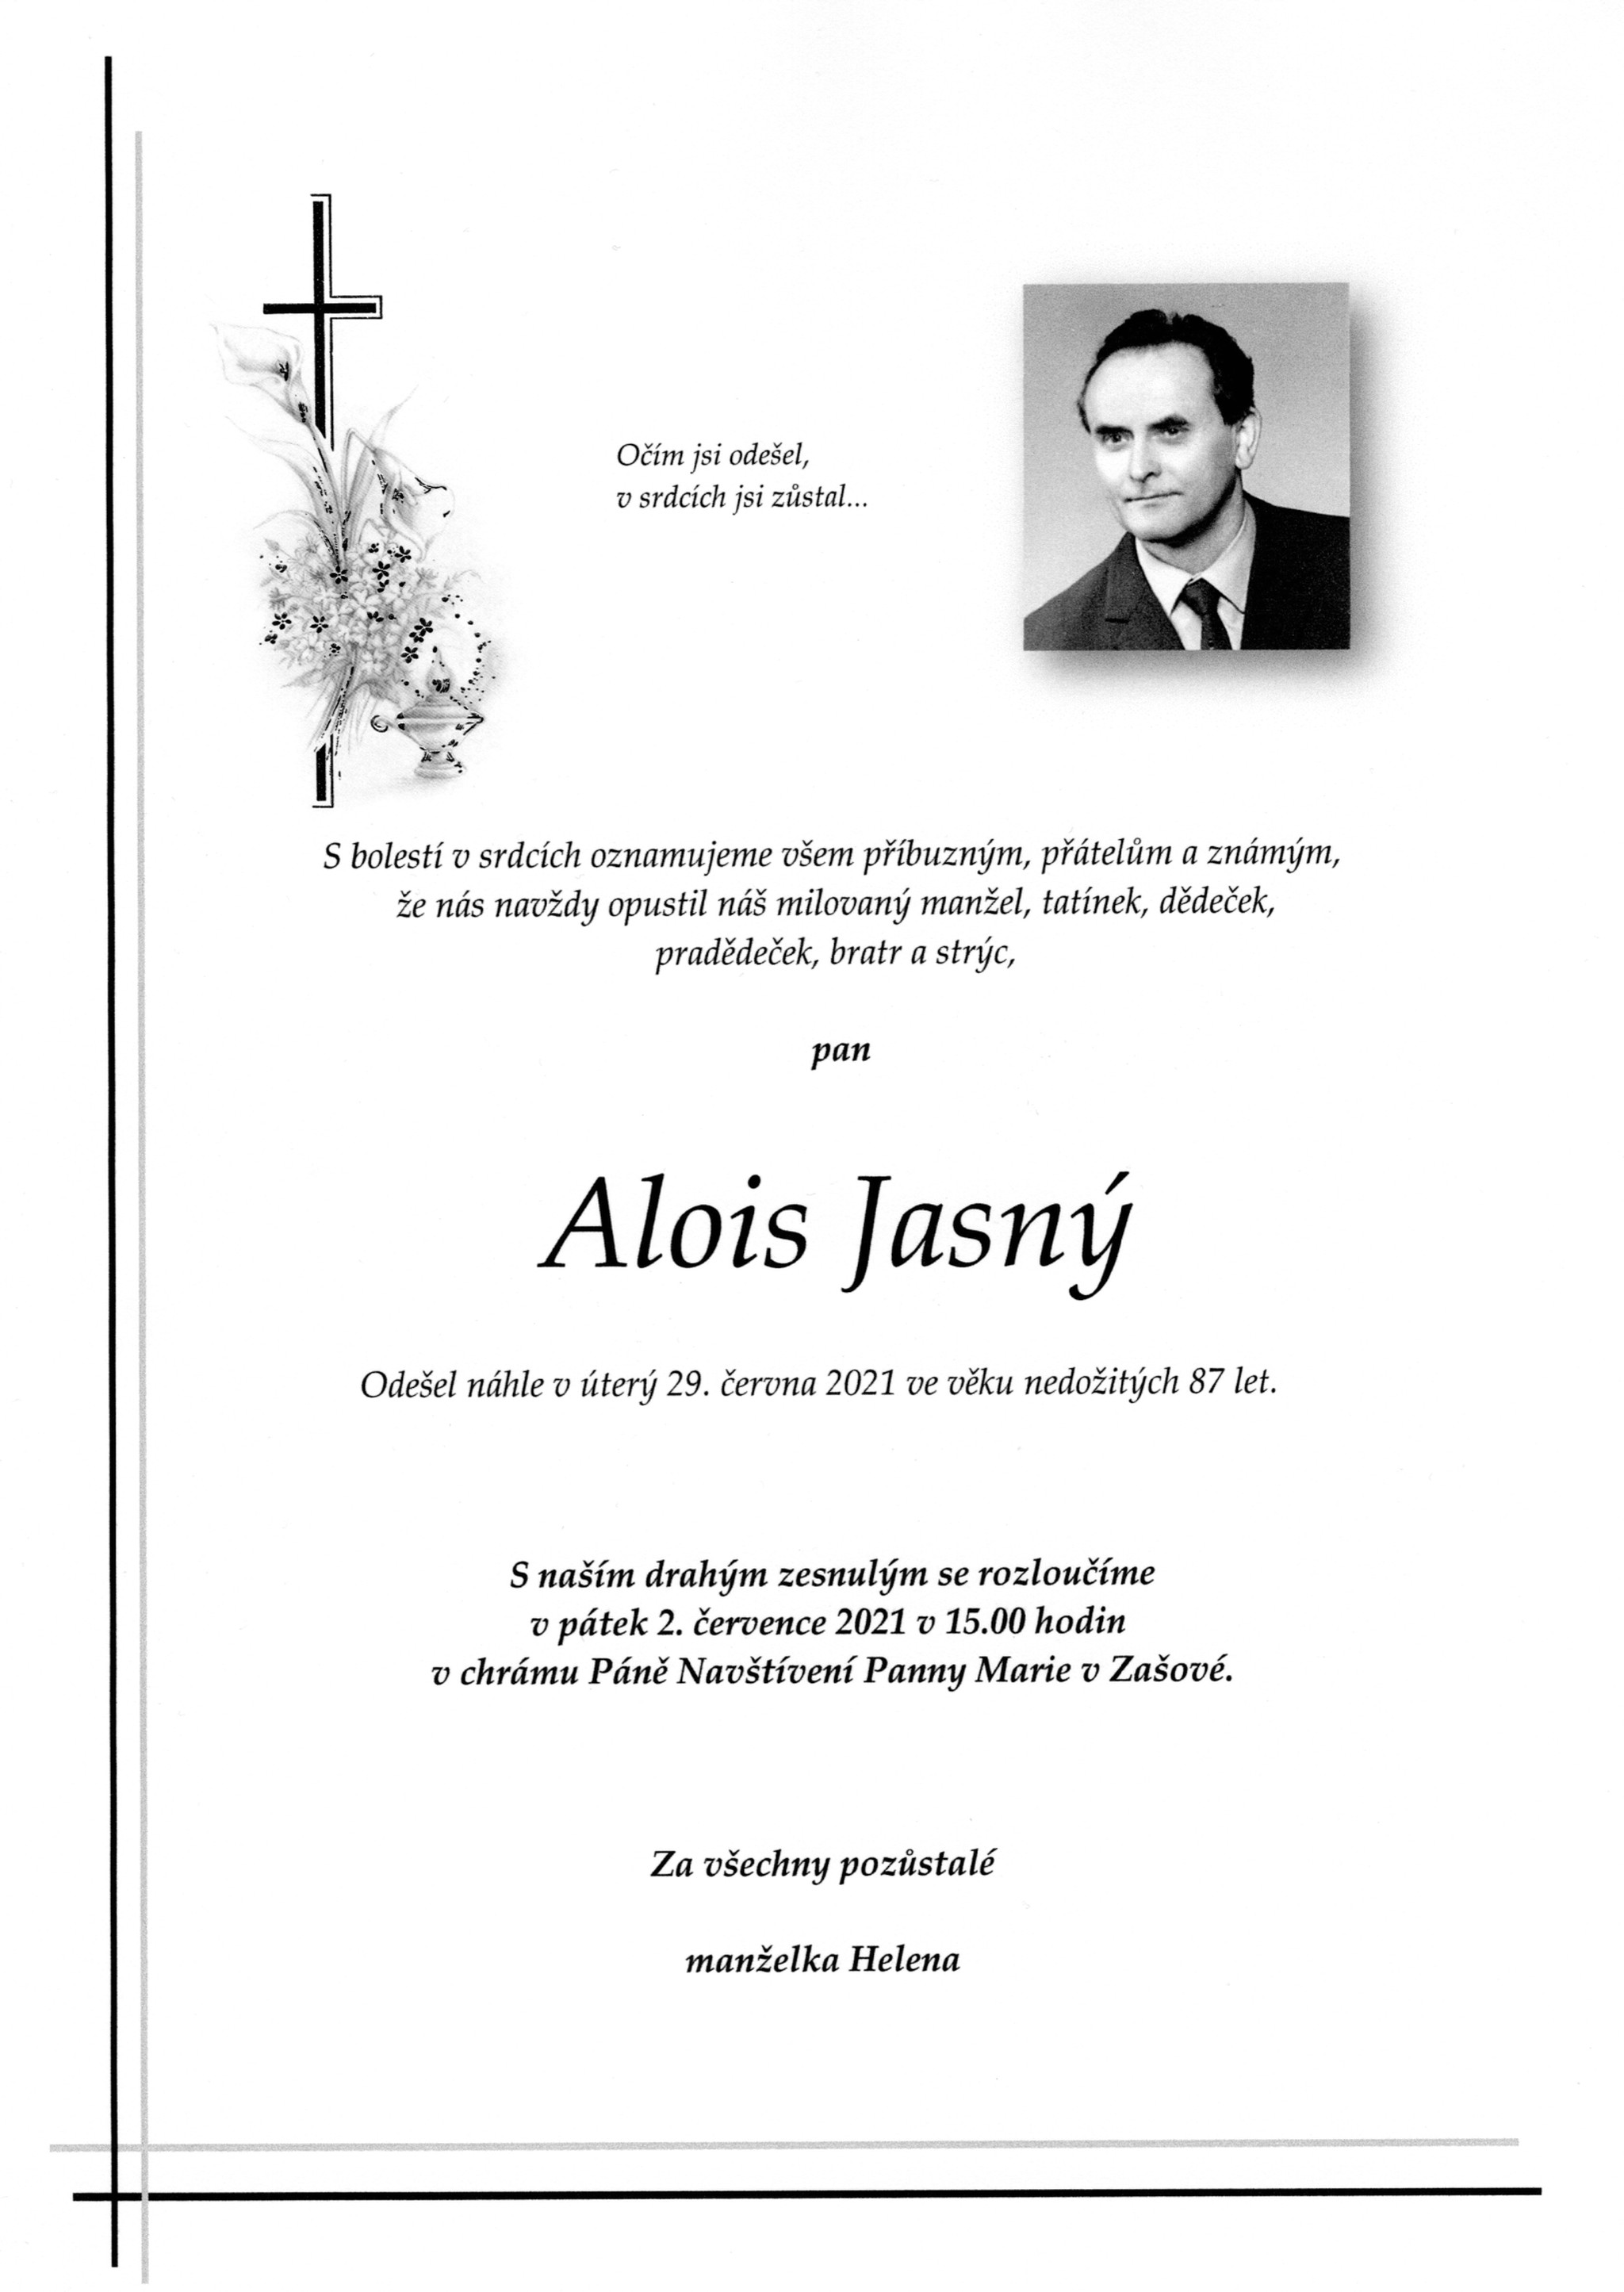 Alois Jasný